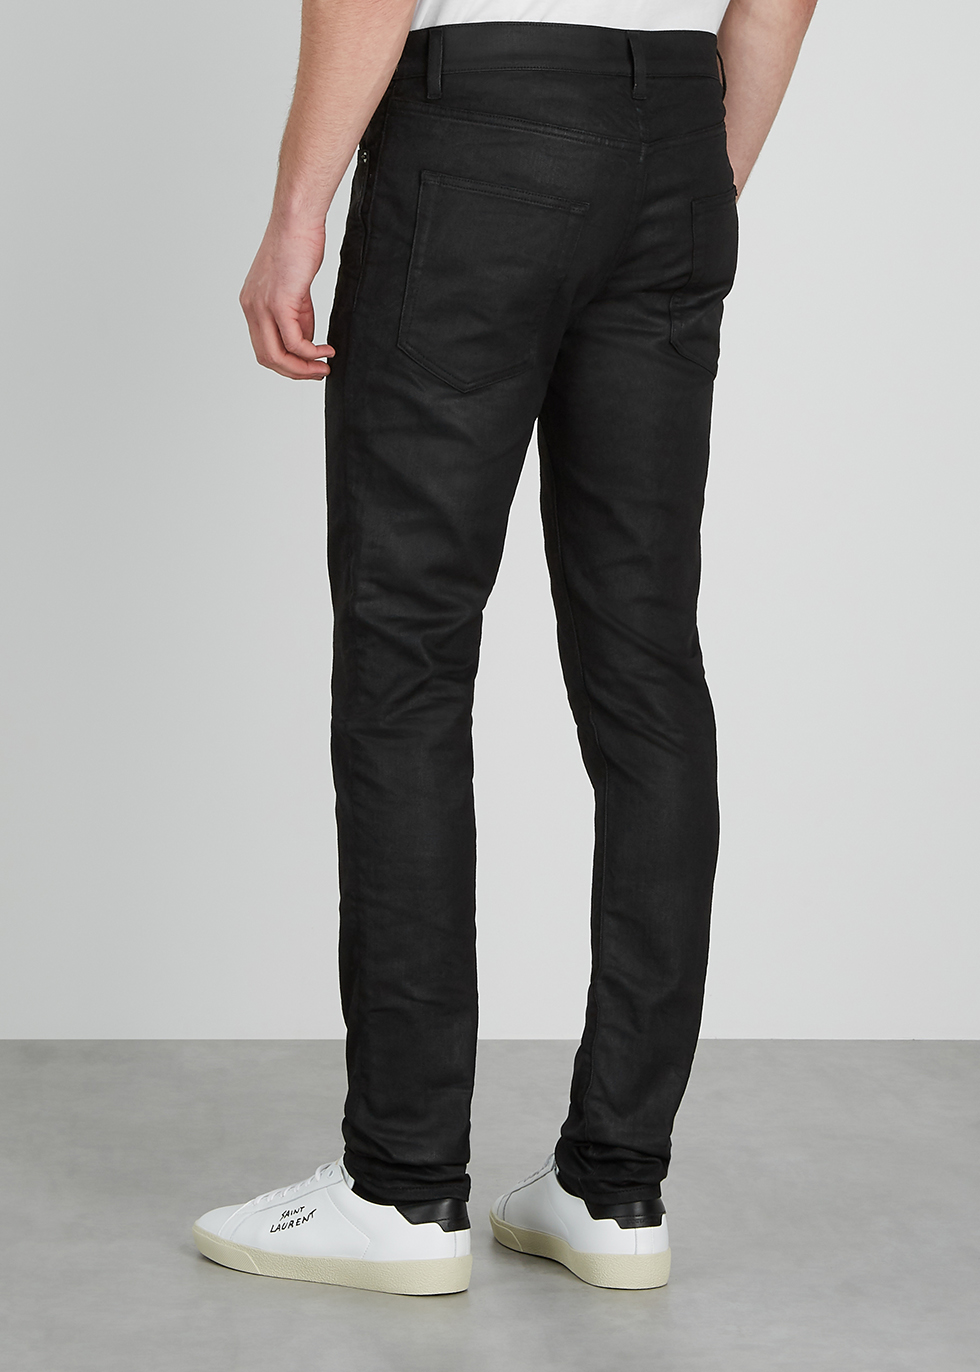 black coated skinny trousers